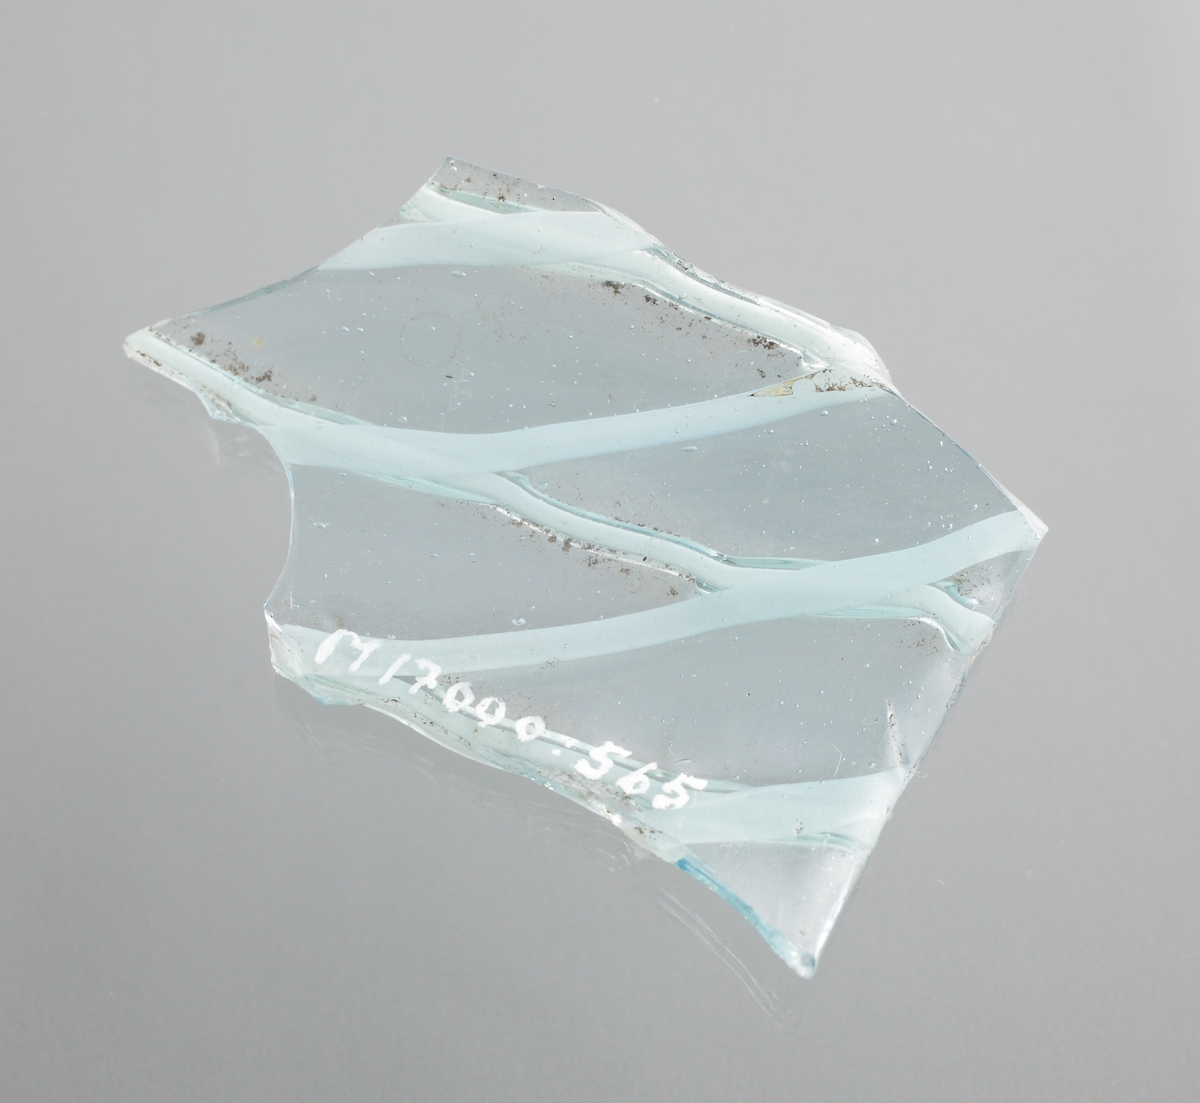 Två delar av ett ornerat venetianskt glas i svagt blå färg. På glaset finns två skikt pålagda vita trådar i ett grovt nätmönster (vetro a fili) i relief. Den större av skärvorna är en del av en mynningsrand i ett cylindriskt glas.